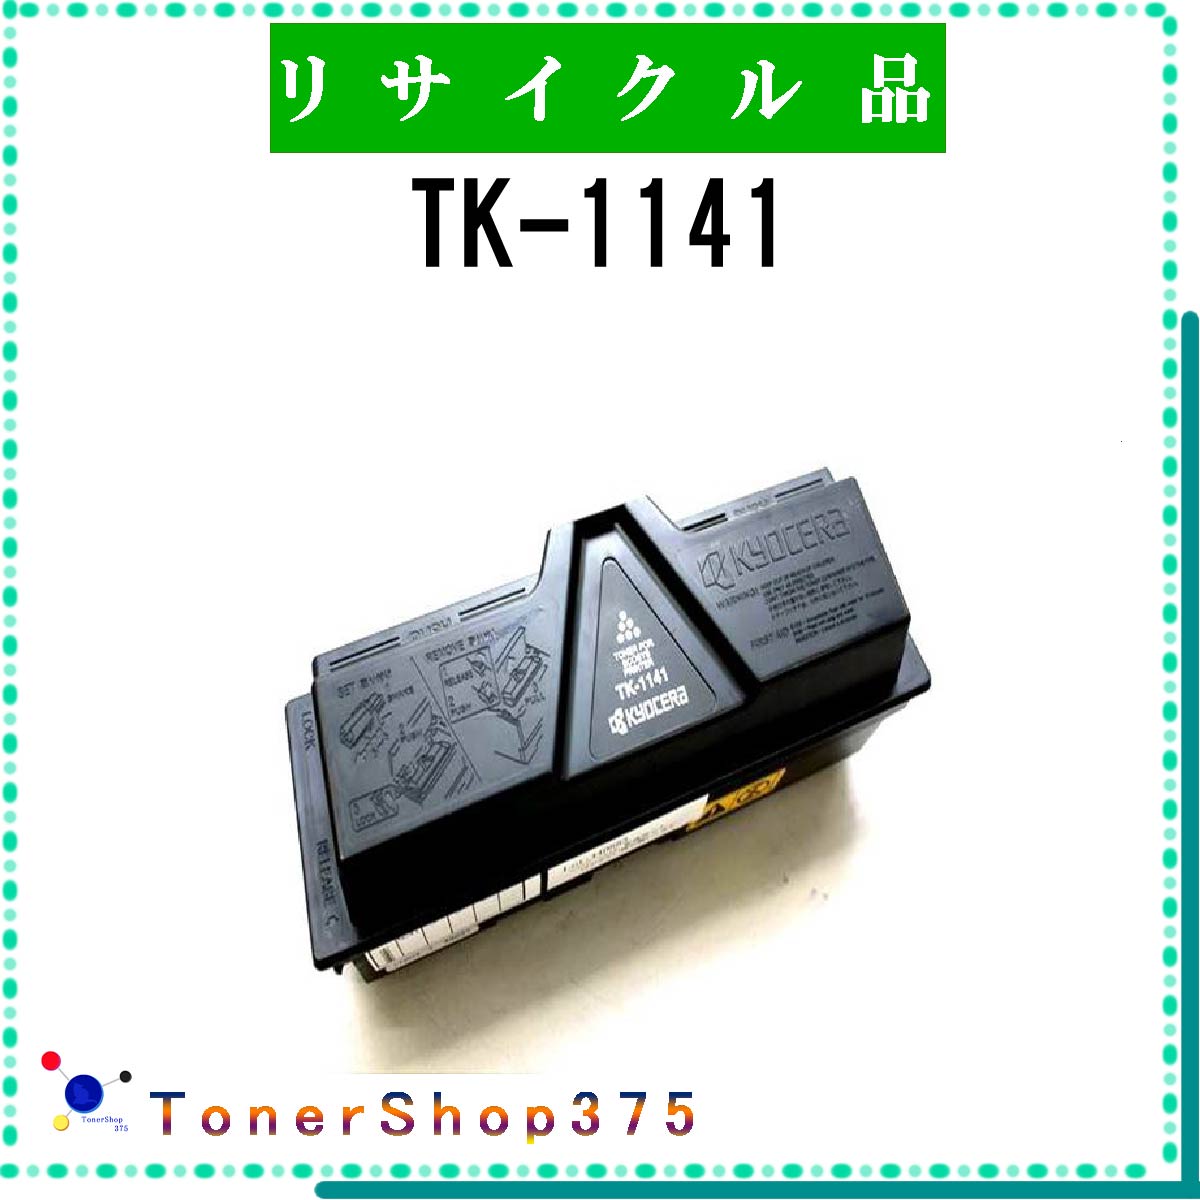 KYOCERA y TK-1141 z TCN gi[ TCNHƉF/ISO擾H蒼 STMCF E&Q ݌ɕi Z